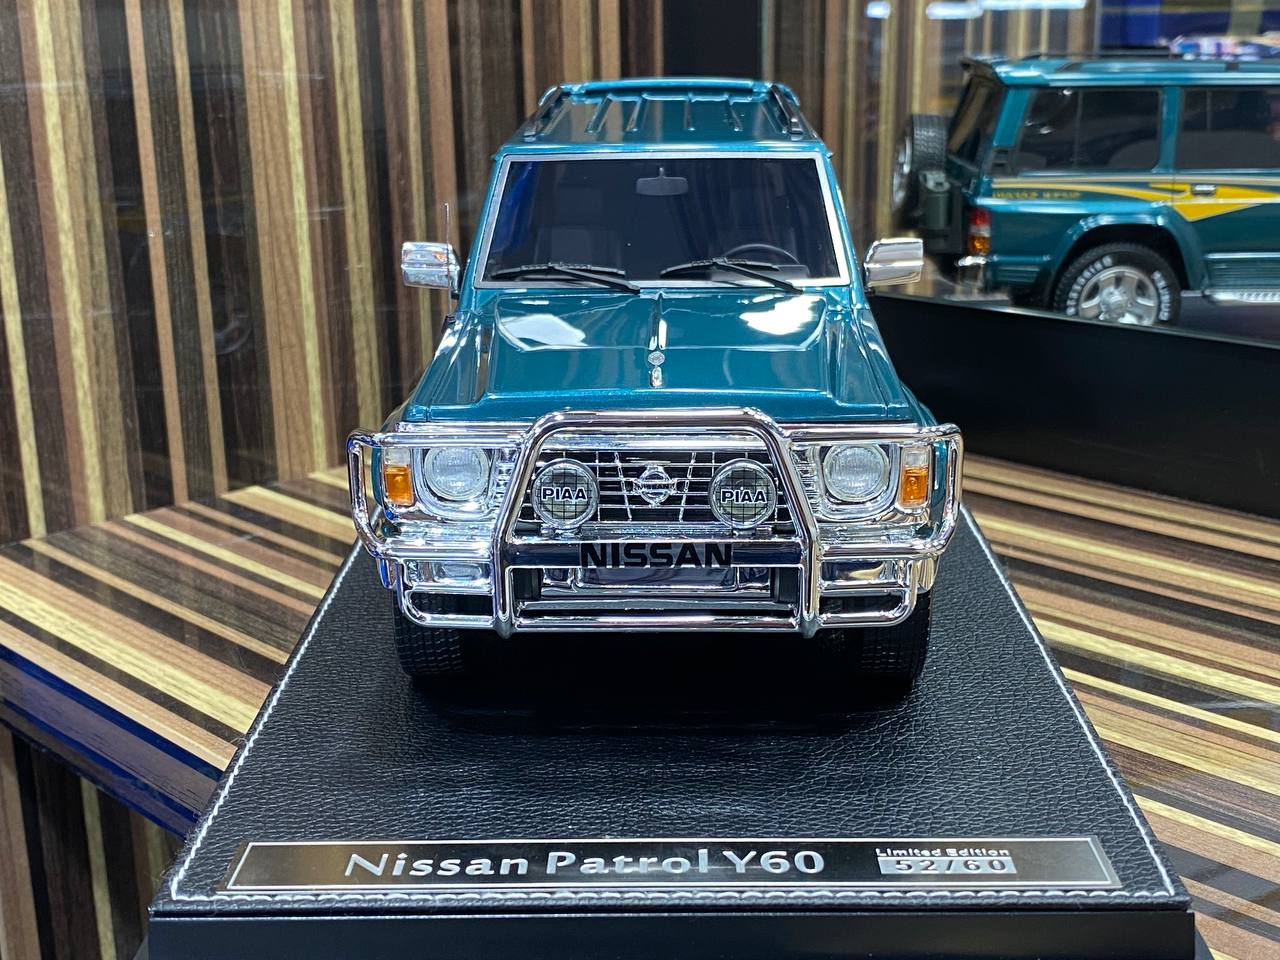 1/18 Diecast Nissan Patrol Super Safari Y60 IVY Models Scale Model Car